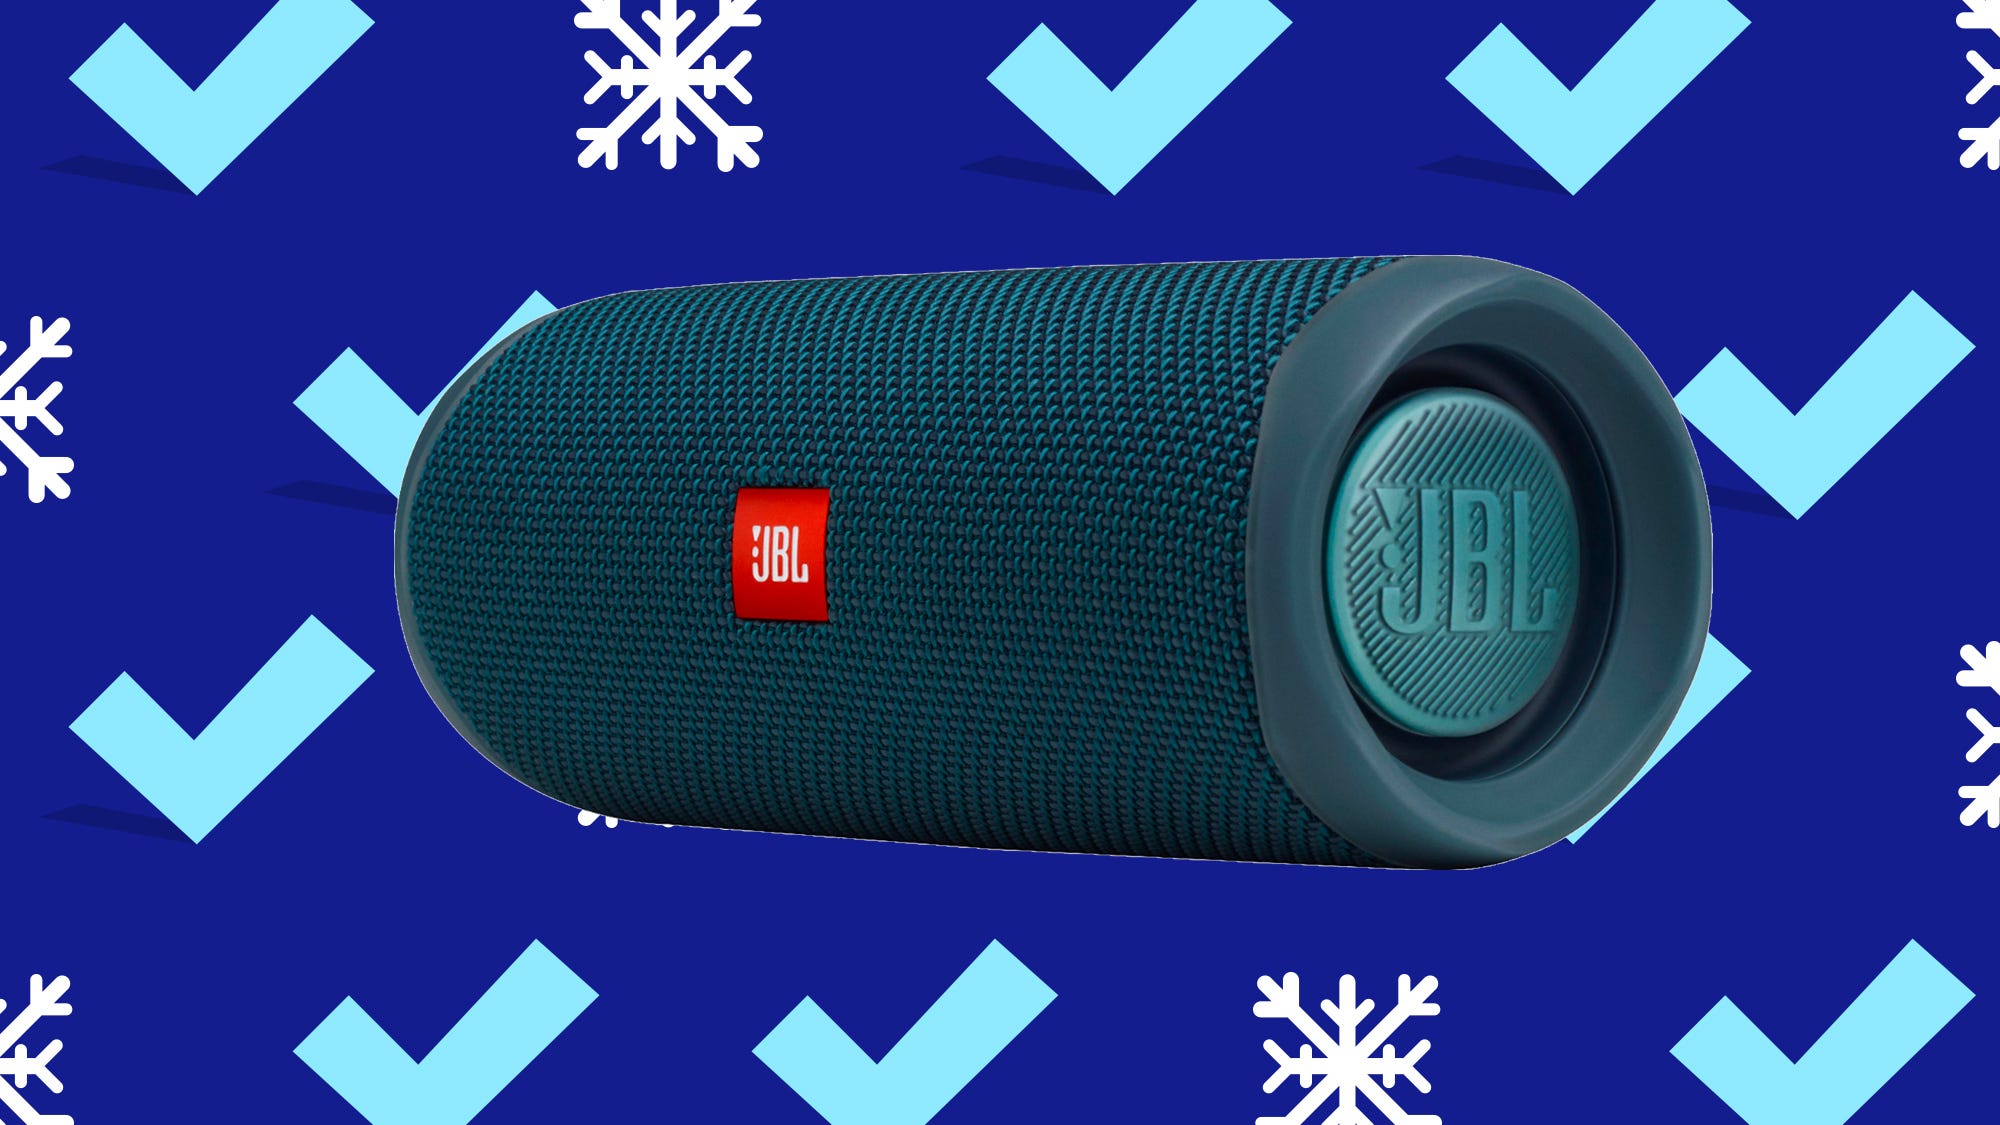 jbl bluetooth speaker best buy